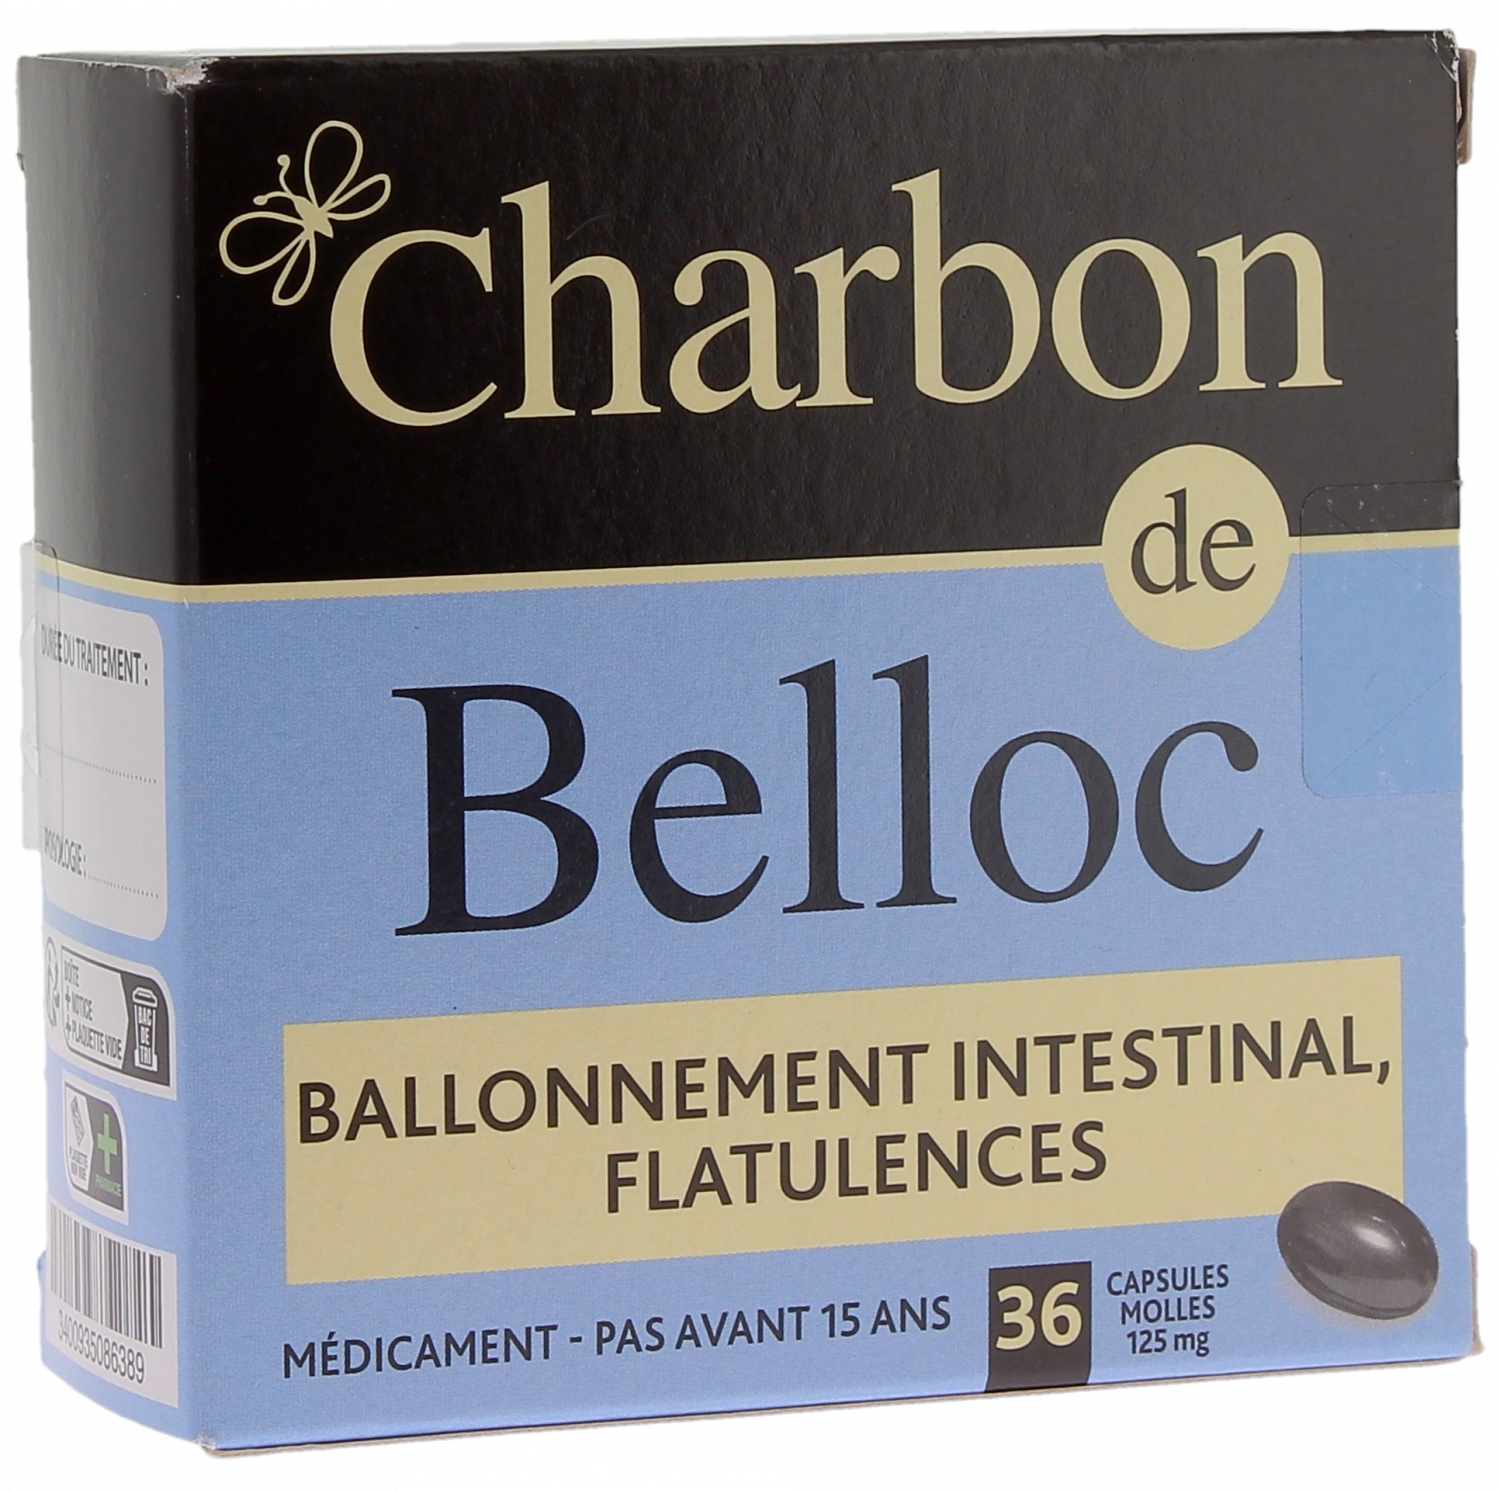 Charbon de belloc ballonnement intestinal flatulences - 36 capsules molles  Charbon de belloc 3400935086389 : Pharmacie en ligne et parapharmacie en  ligne Pharmashopi